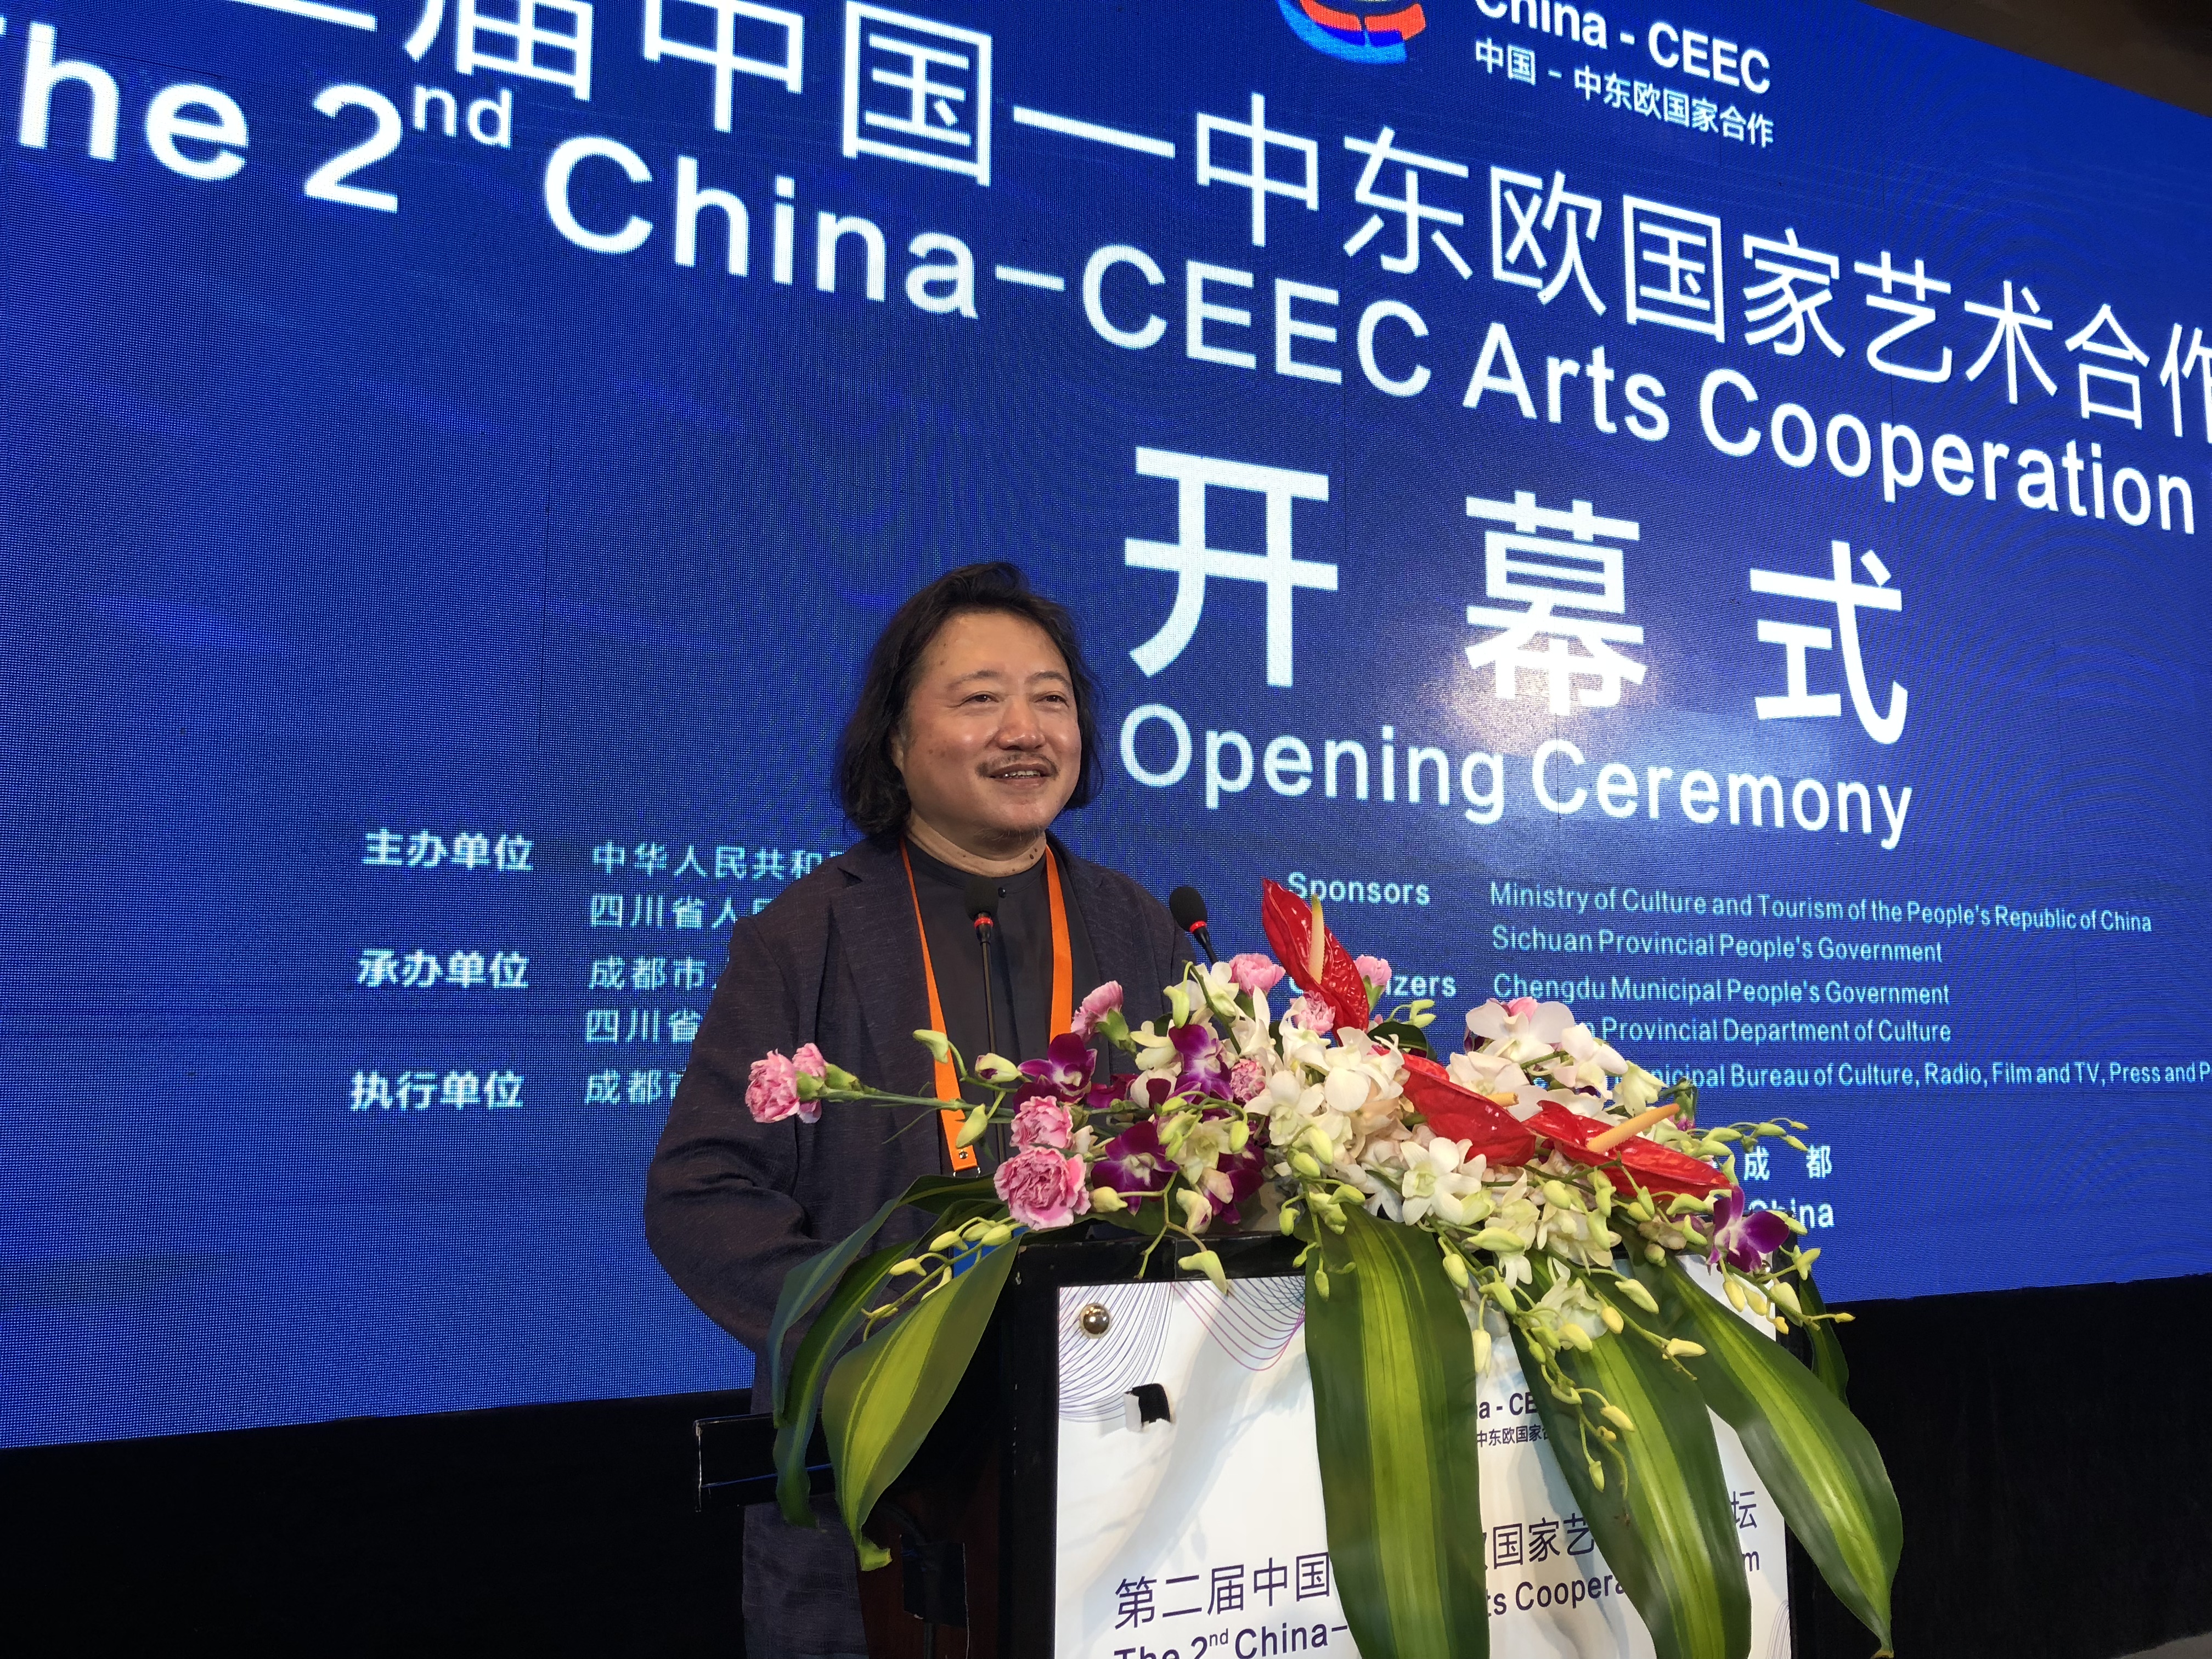 中国国家画院副院长纪连彬在开幕式上讲话